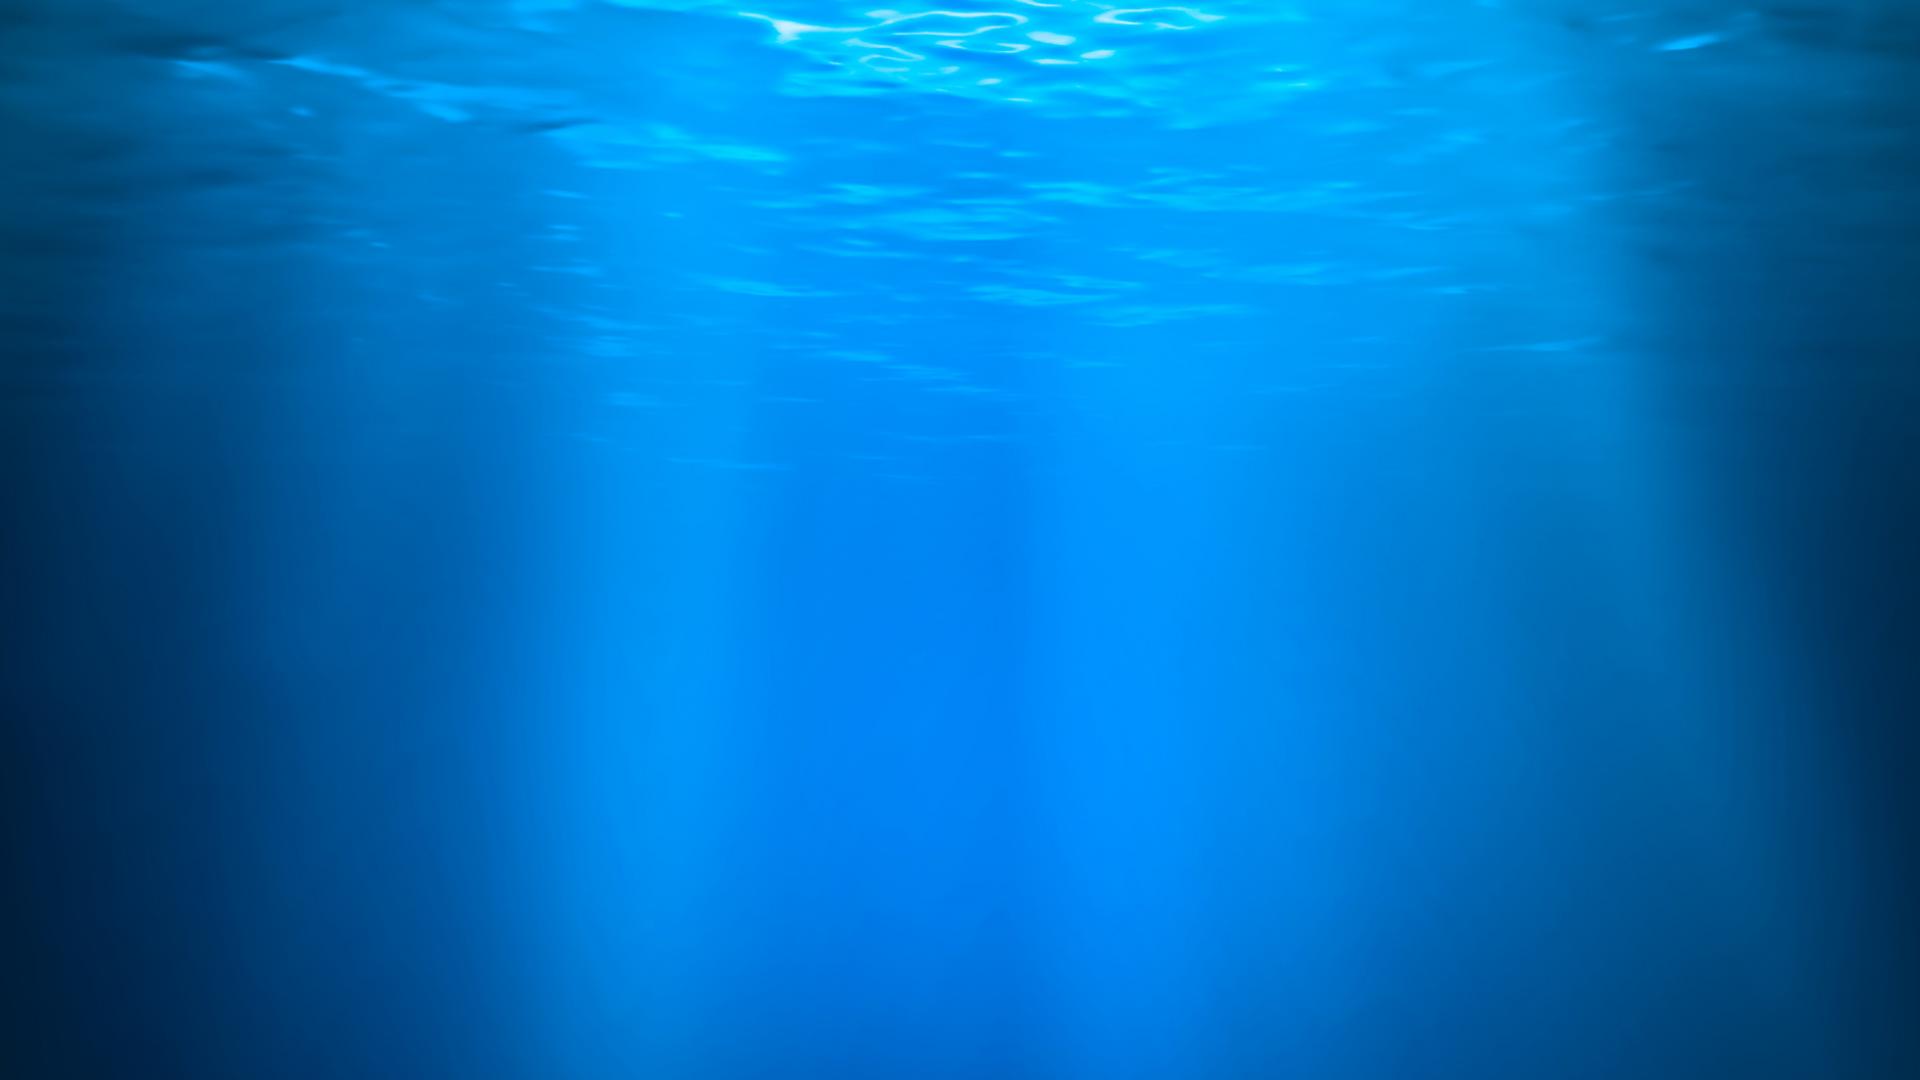 Толща воды в океане